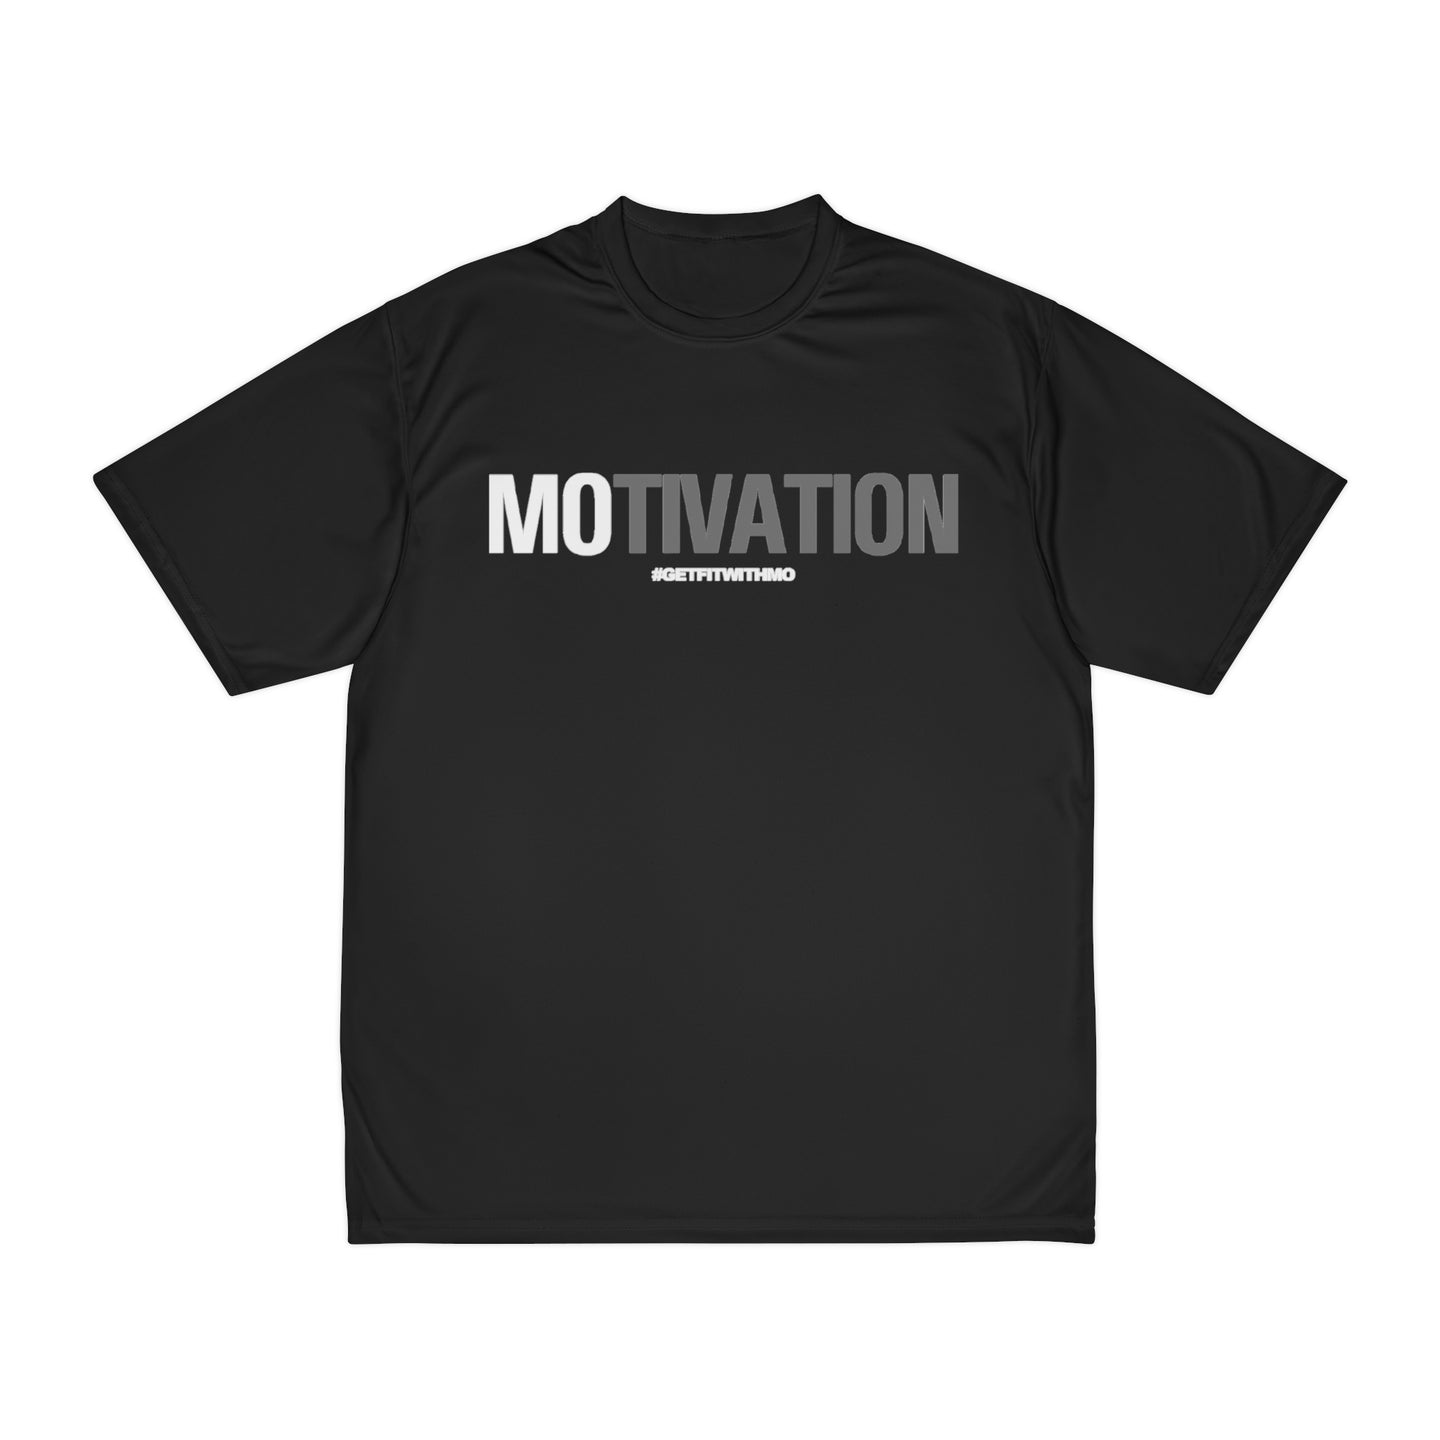 MOtivation! Performance Athletic Short Sleeve Shirt